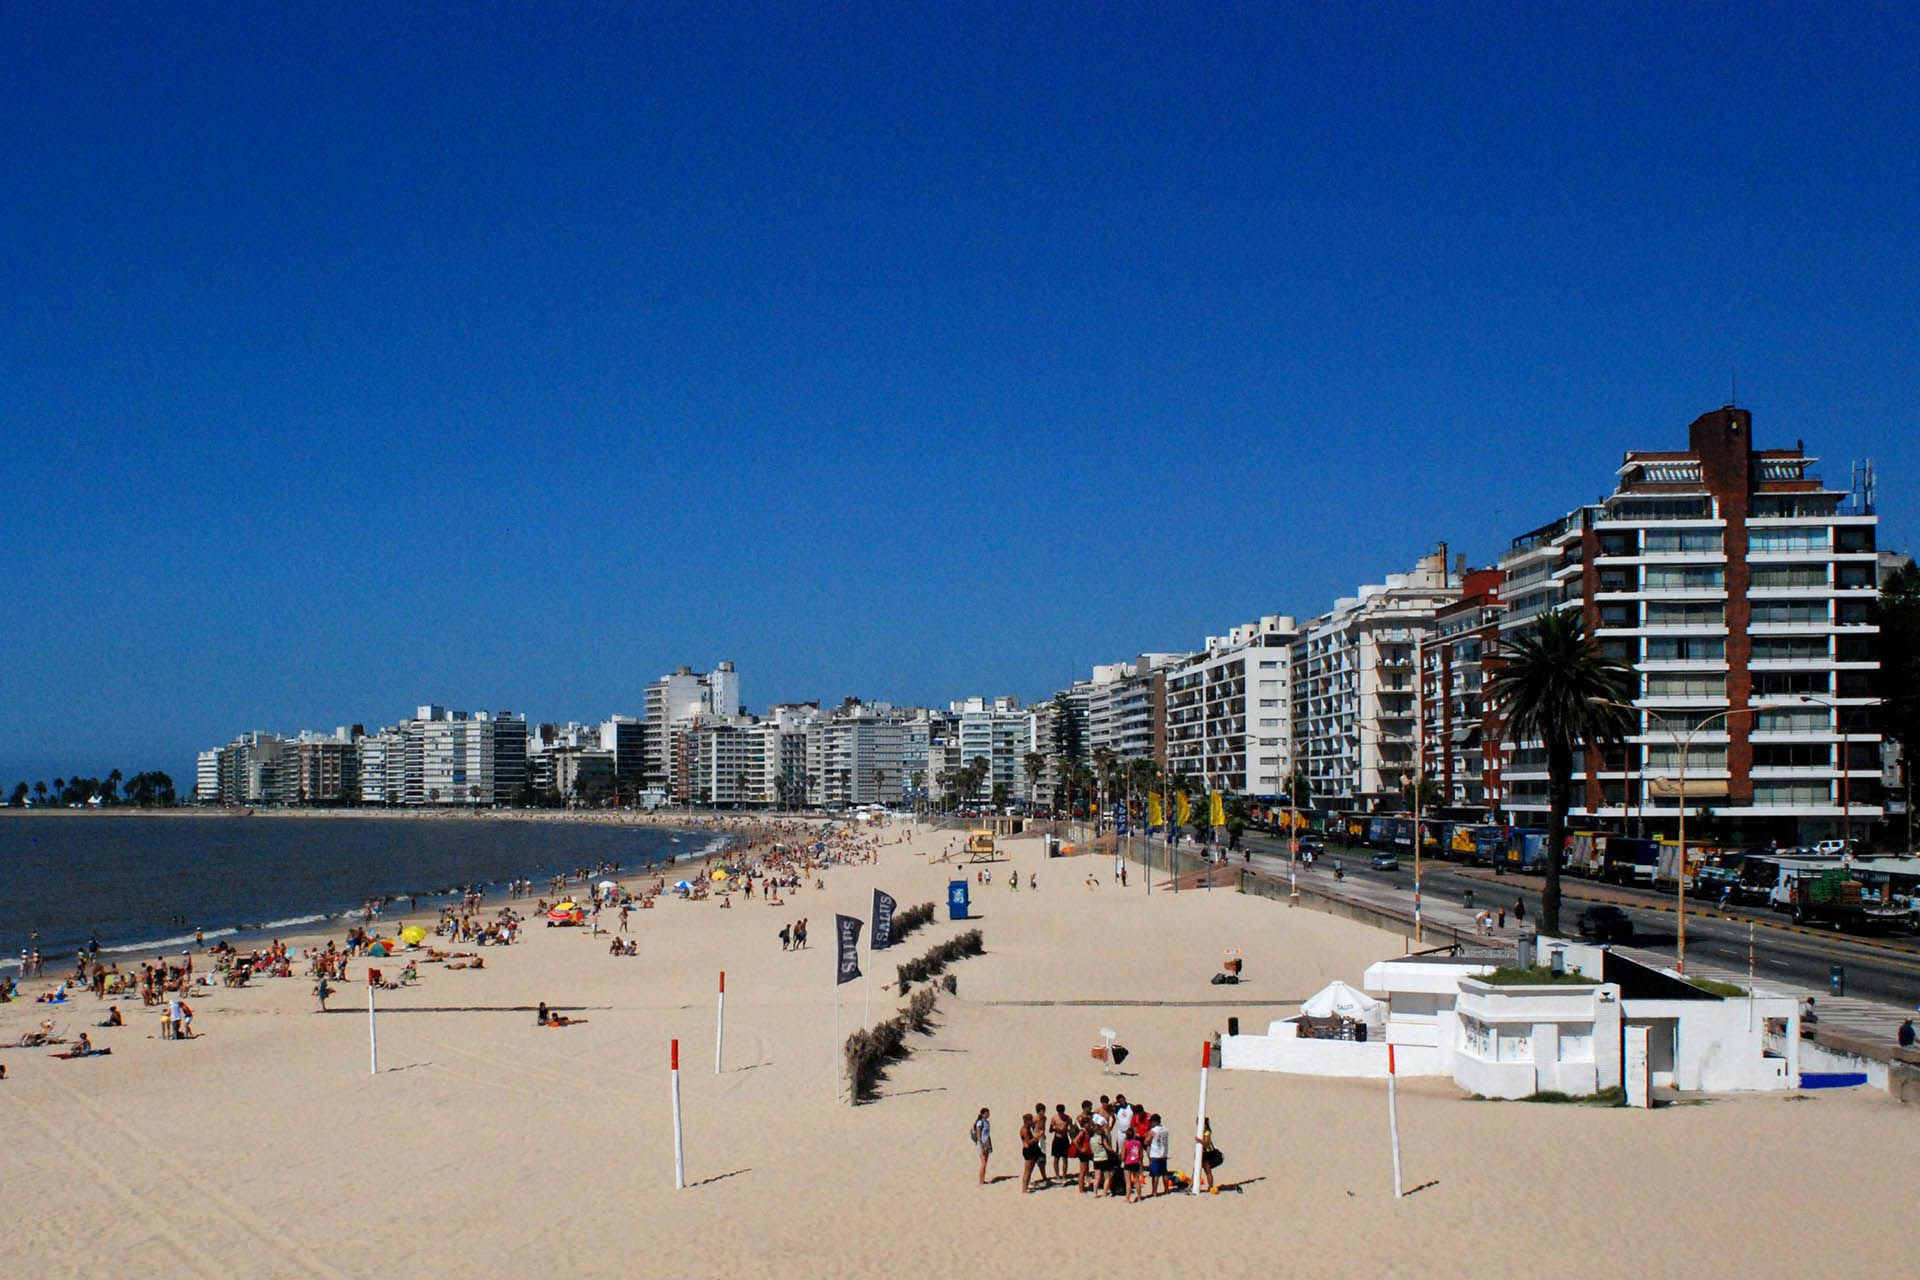 La playa de Montevideo en el barrio de Pocitos, donde está la concentración demográfica más alta de la capital de Uruguay. (Crédito: Intendencia de Montevideo).